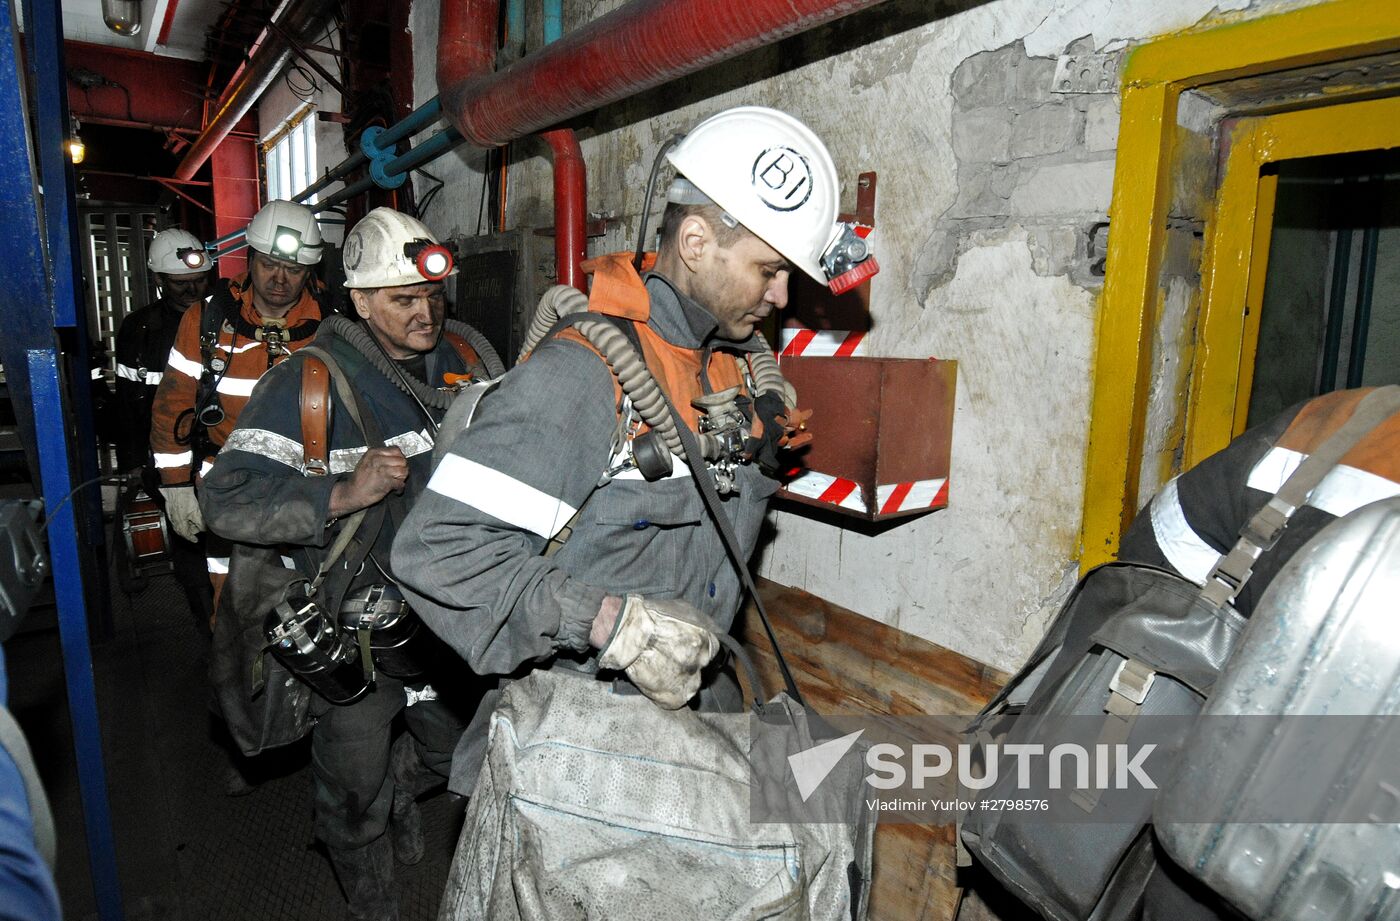 Severnaya mine in Vorkuta suspends operation after rockburst